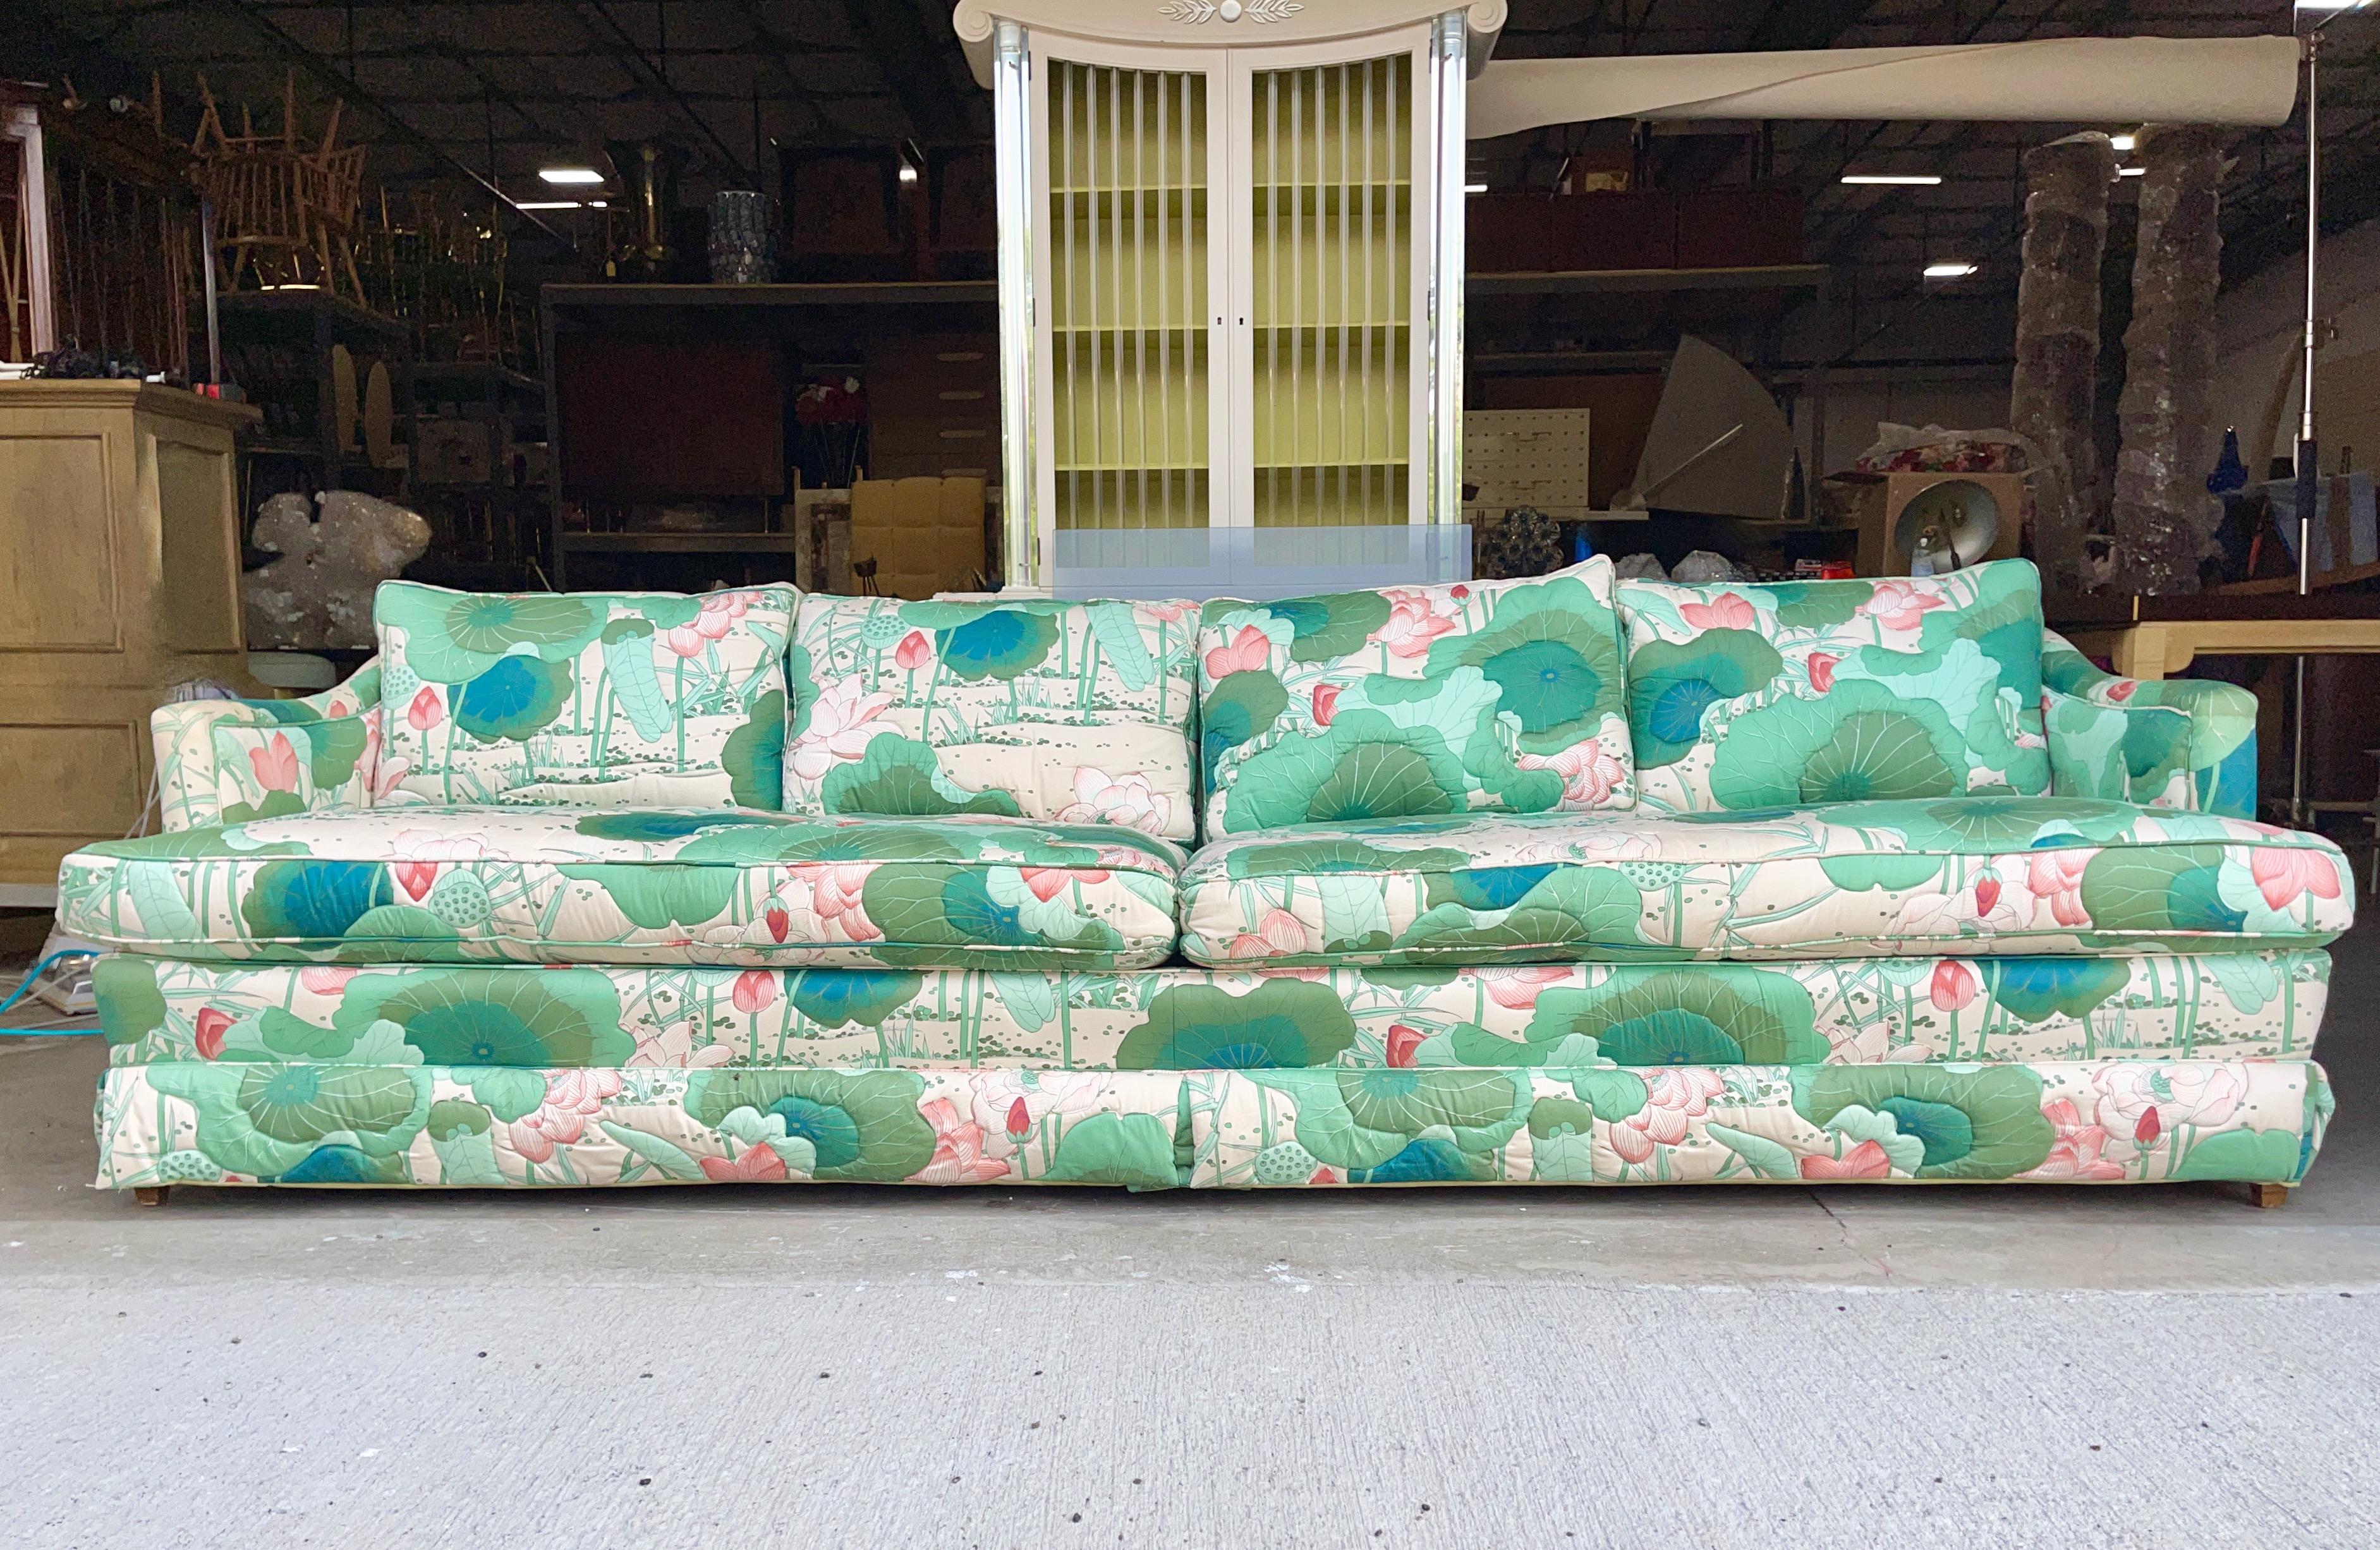 Vintage gesteppt Baumwolle lily pad gepolstertes Sofa mit zwei Sitzkissen, vier Rückenkissen und vier Wurfkissen.
Keine Labels.
Armhöhe 23